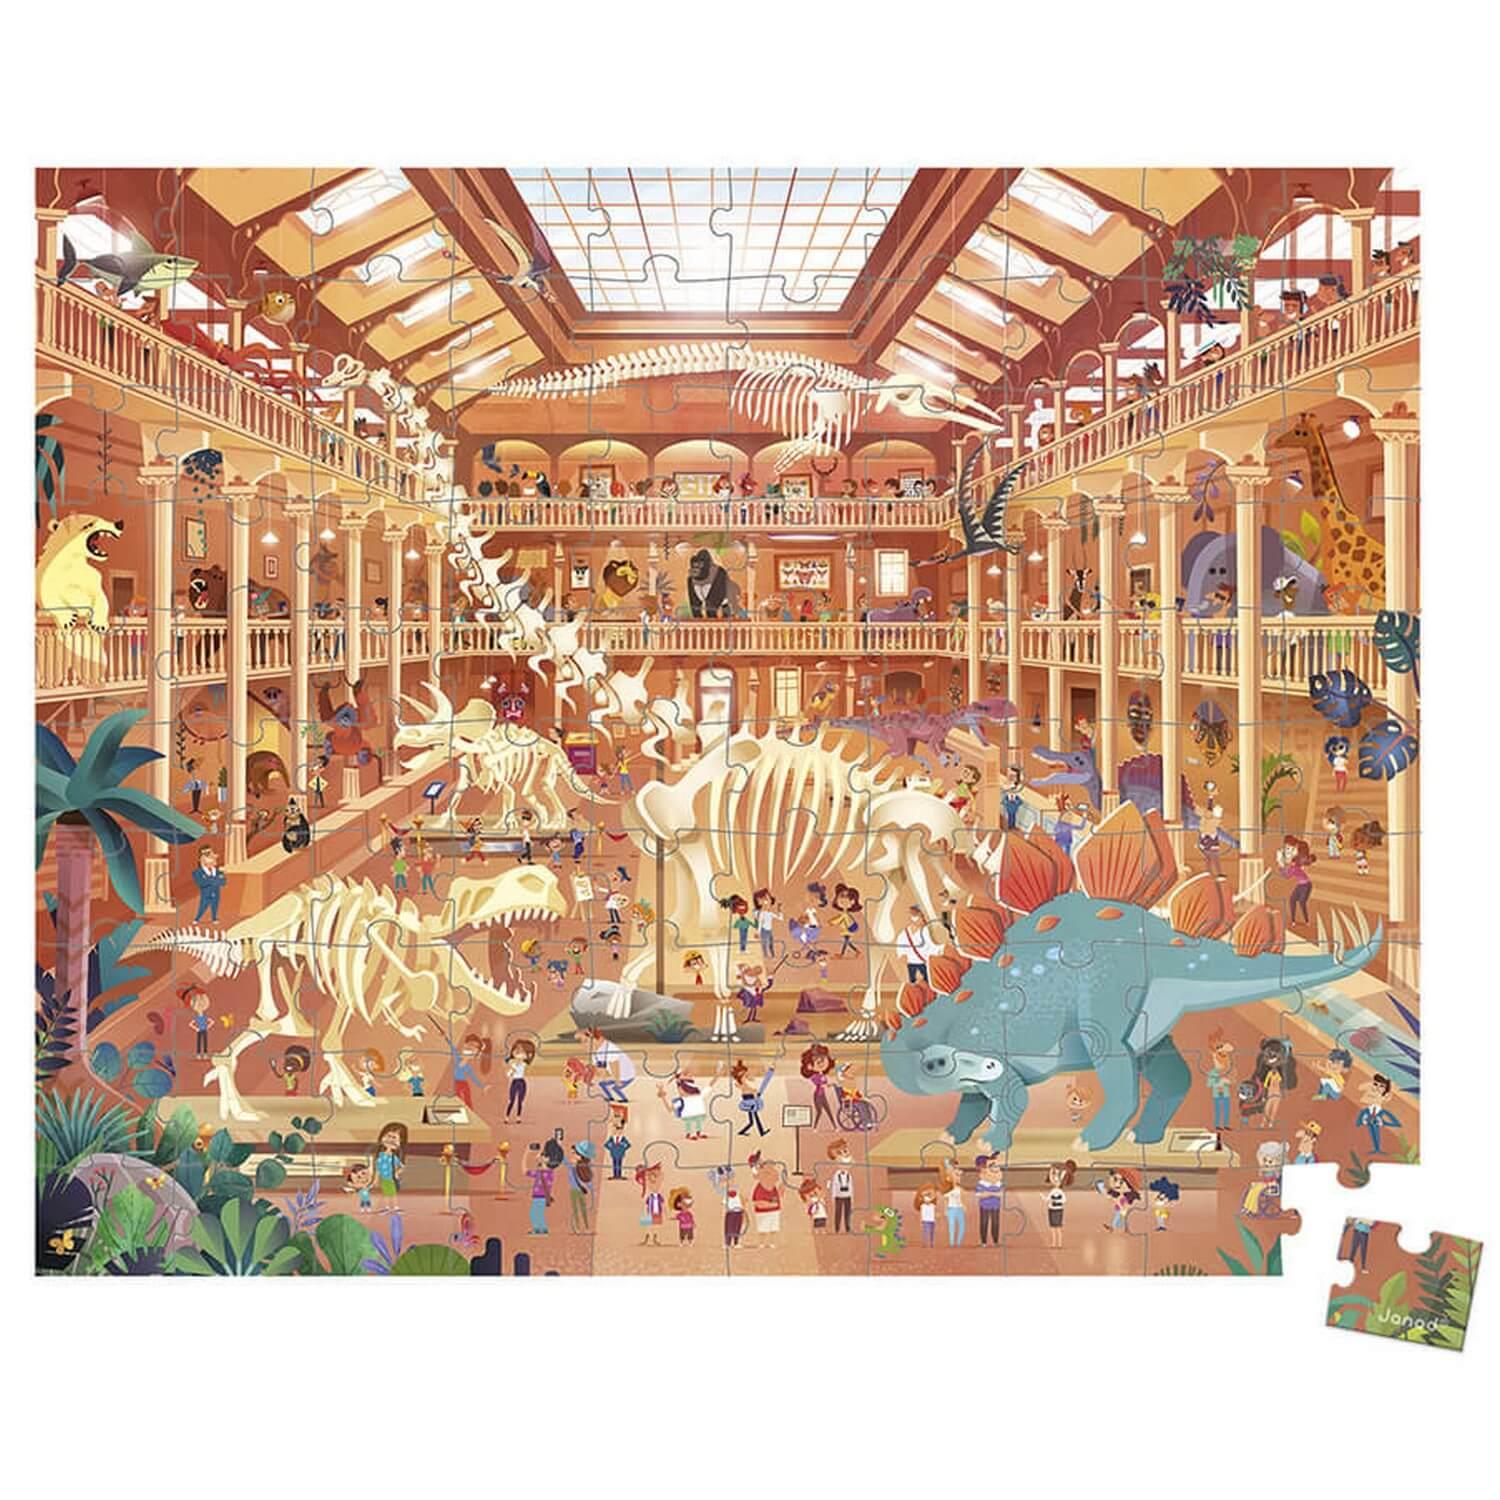 Trefl, Puzzle Pour Enfant Dinosaures de 100 Pièces